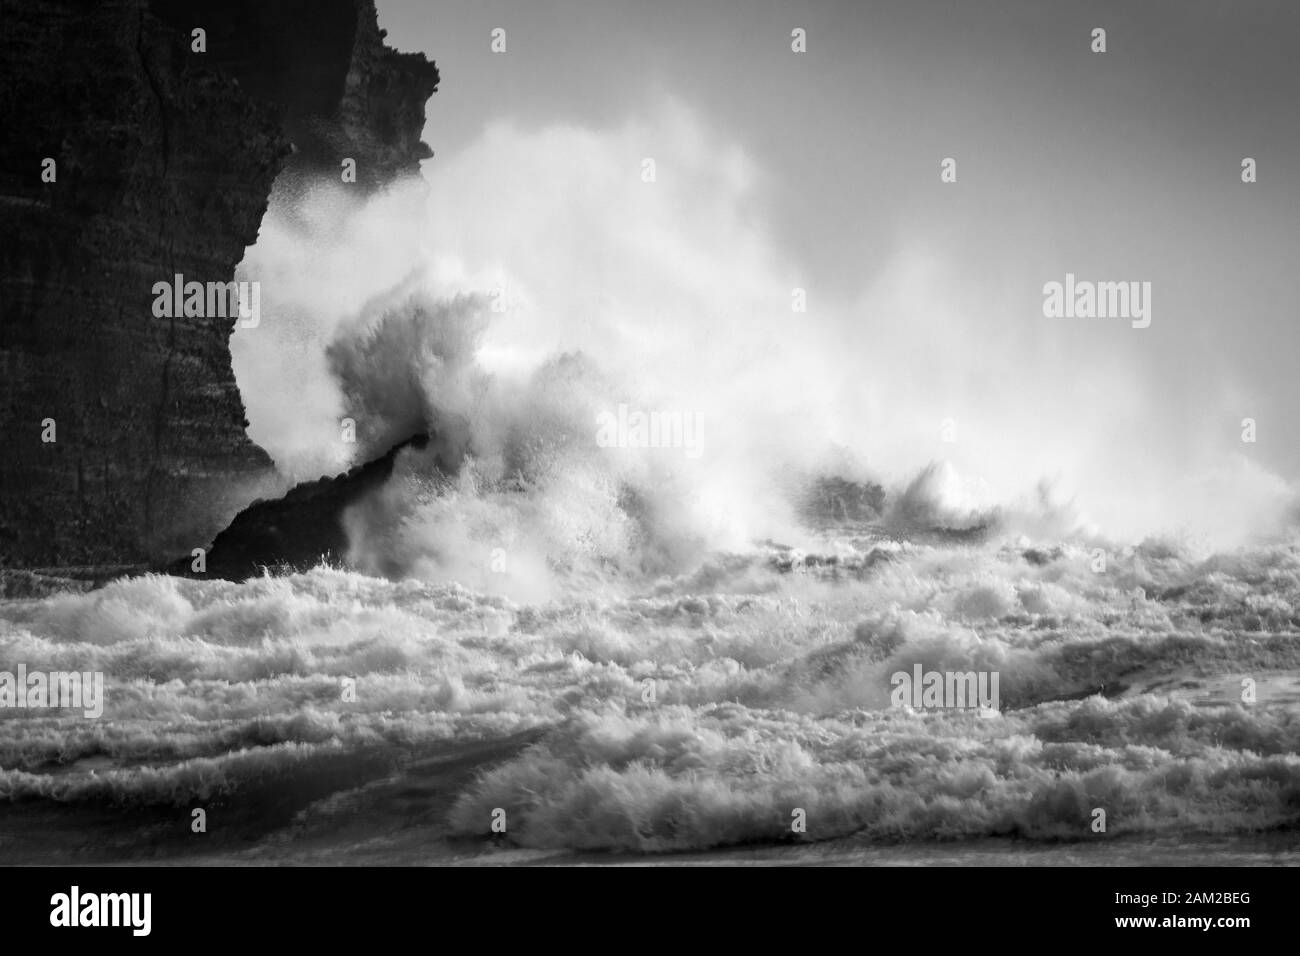 Immagine in bianco e nero di grandi onde che si infrangono contro le rocce di Piha Beach, Waitakere, Nuova Zelanda Foto Stock